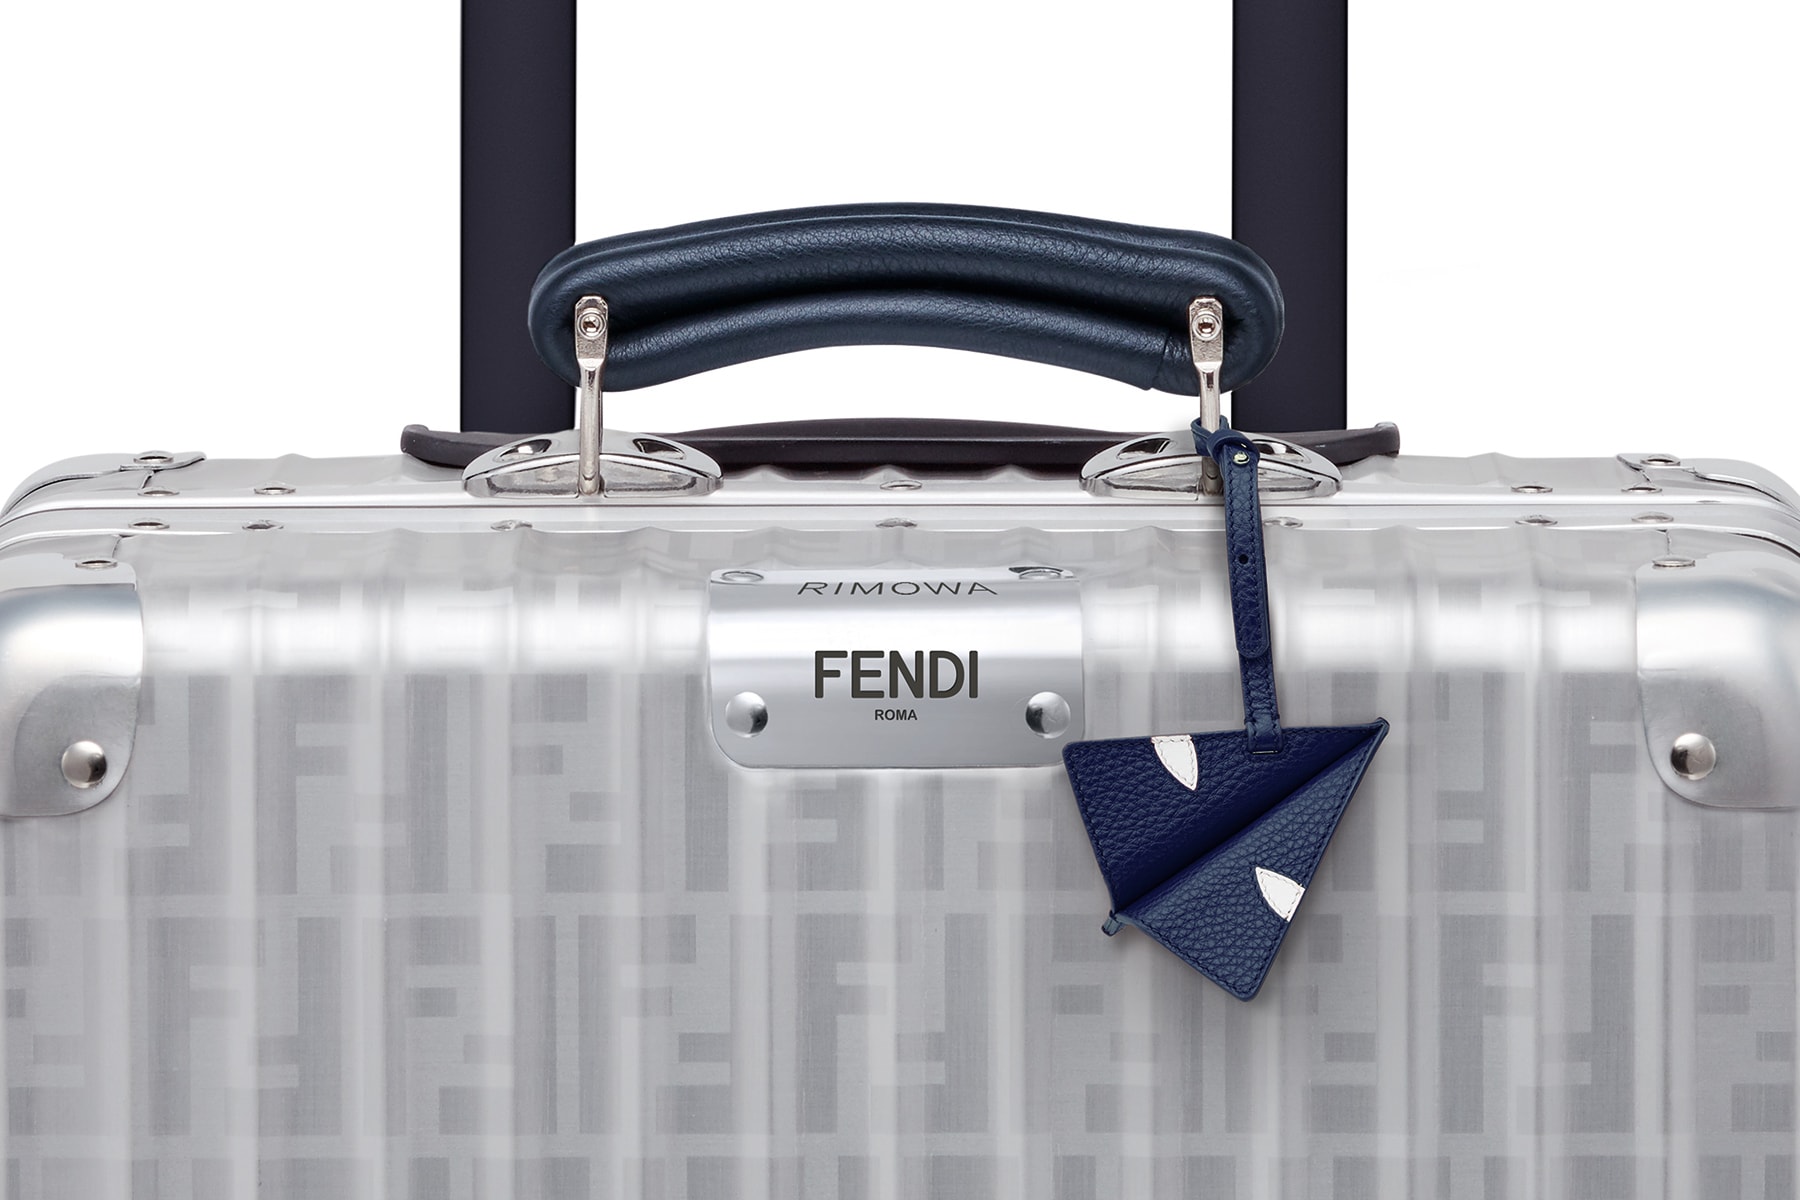 RIMOWA x Fendi 全新聯乘行李箱系列發售詳情公布